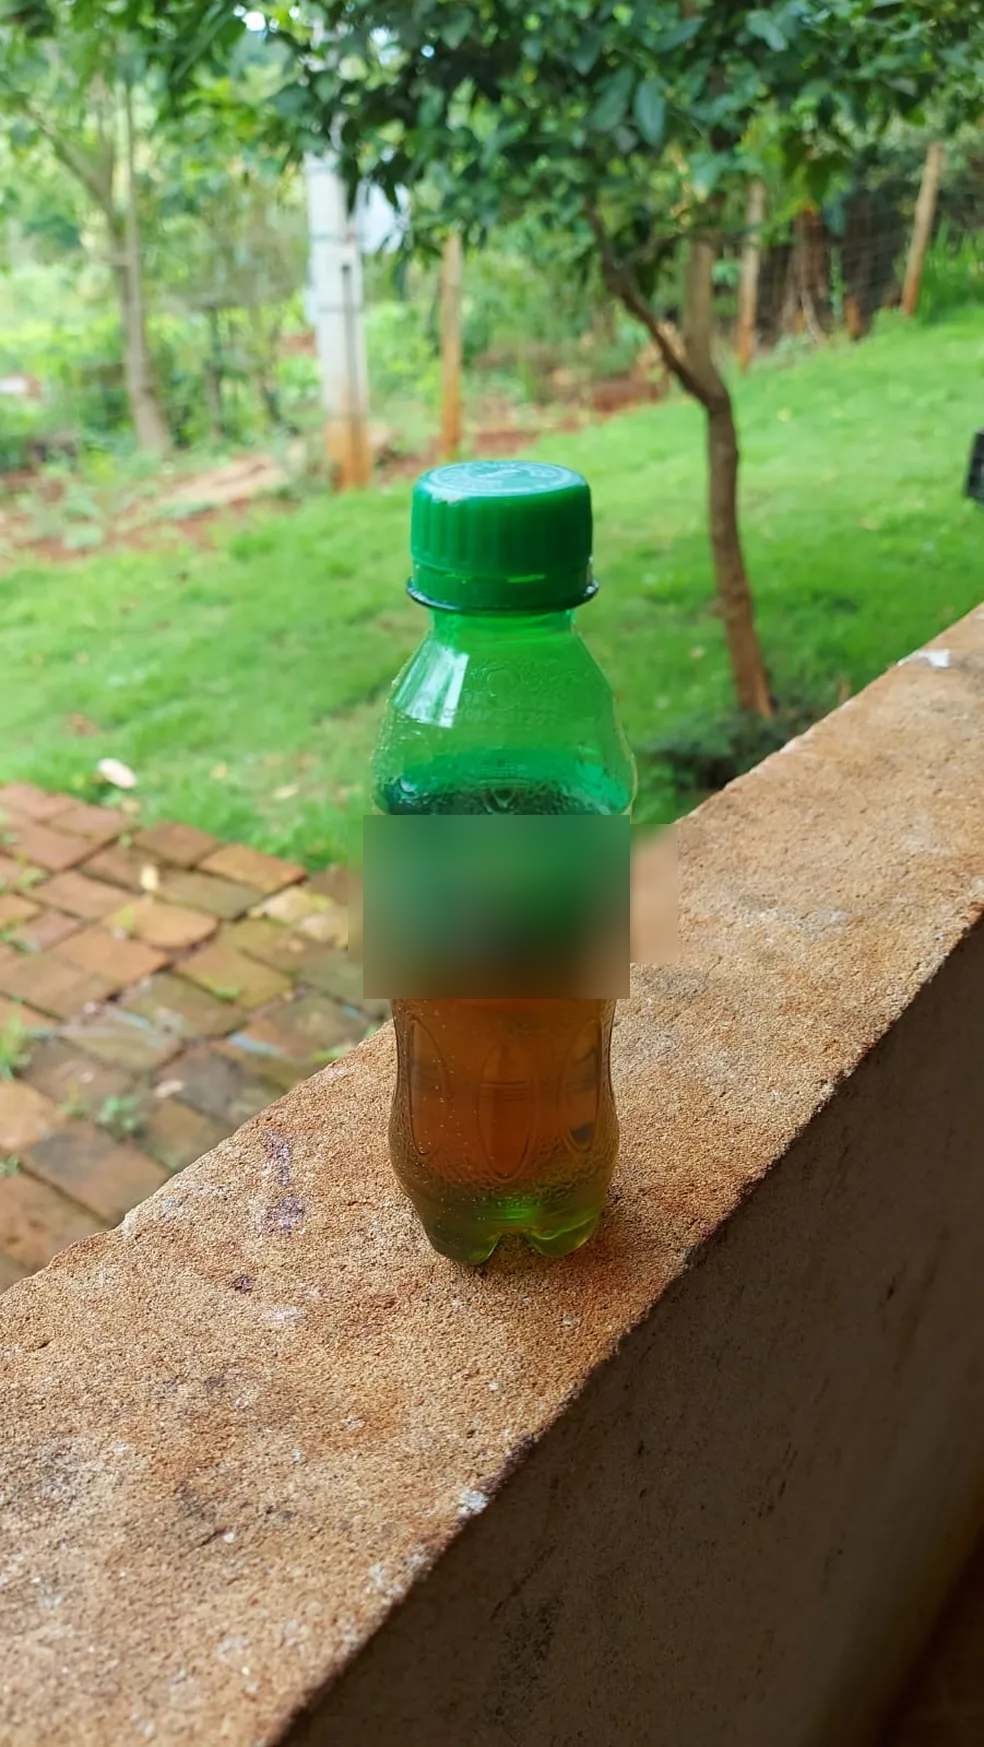 Garrafa de refrigerante armazenava veneno que criança bebeu em Apucarana (PR) — Foto: Reprodução/Polícia Civil